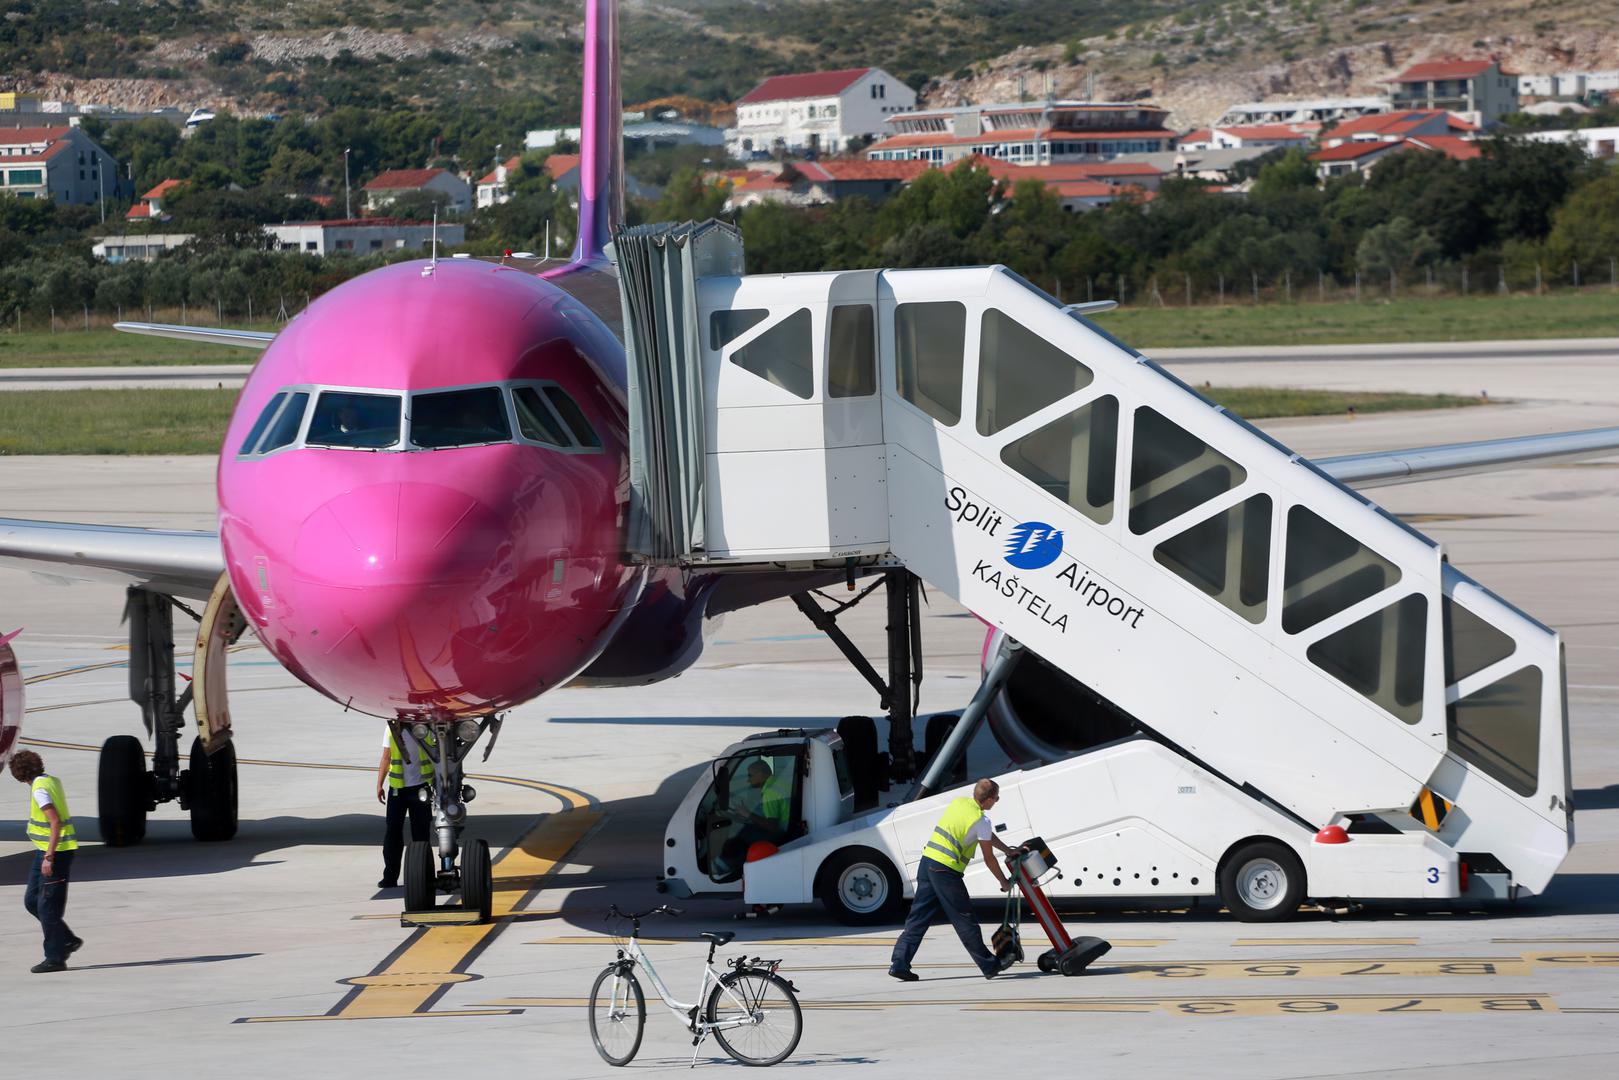 Zračna luka Split lani je zabilježila 3,1 milijun putnika, a ove godine očekuje da će ih biti još oko 200.000 više. Najveći dio tog prometa ostvari za ljetnih mjeseci 